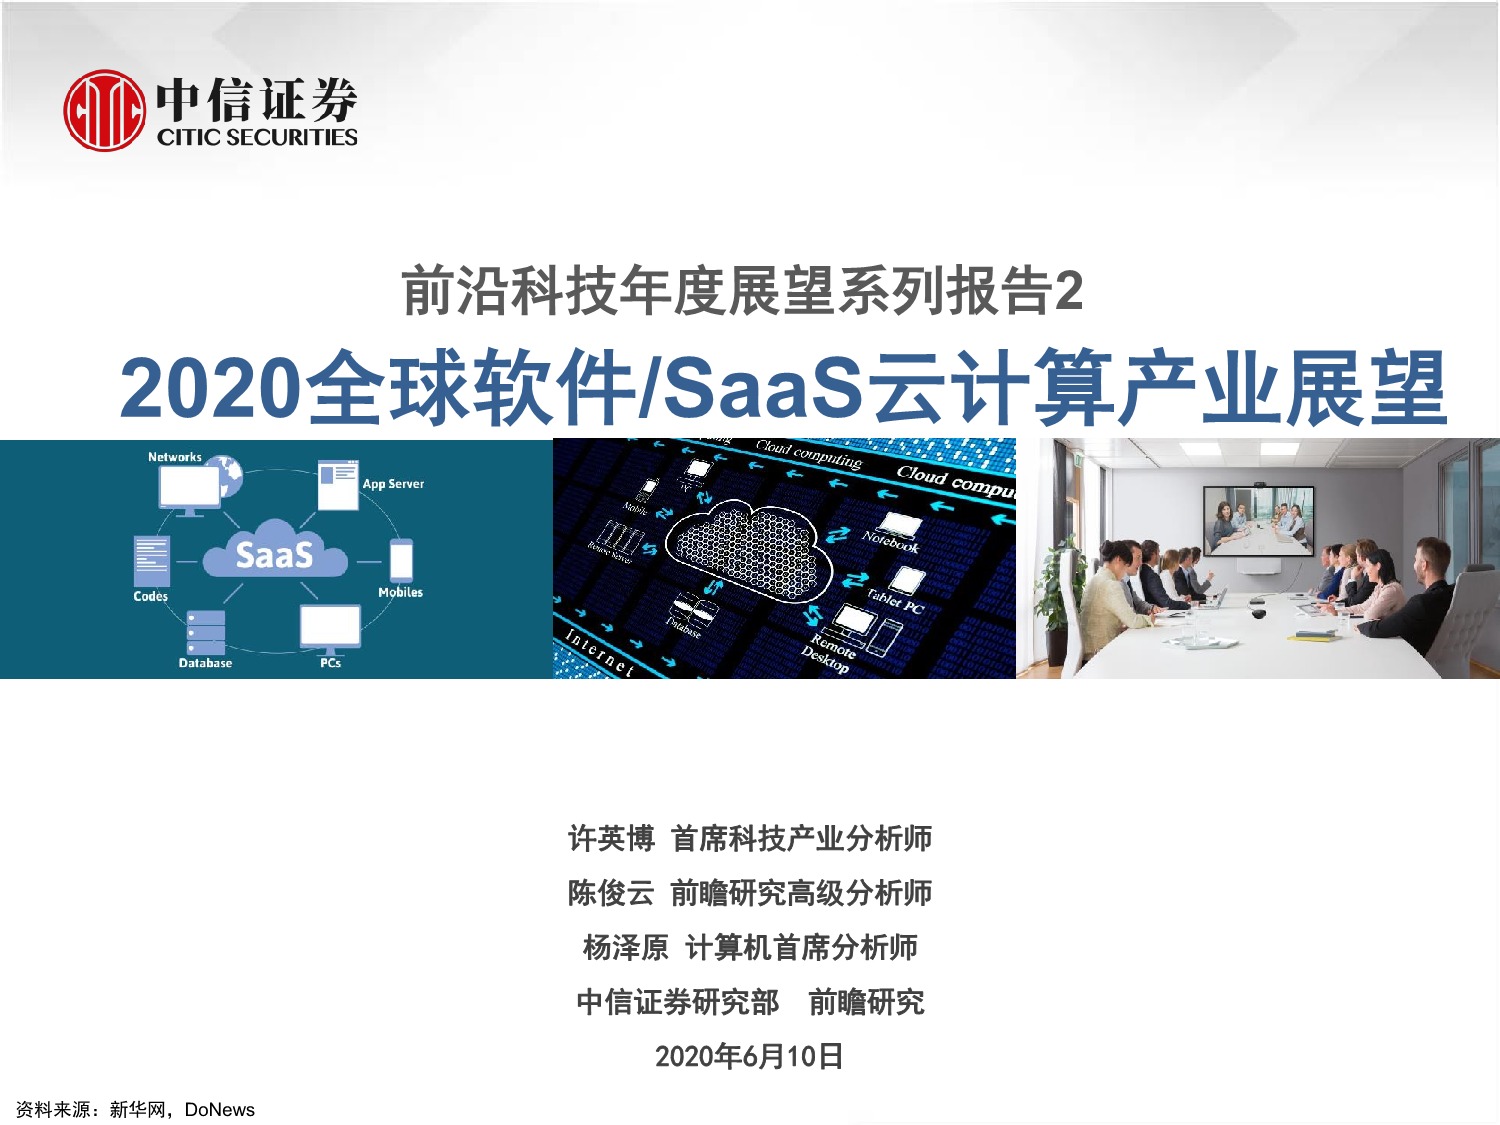 「行业报告」前沿科技年度展望系列报告2—2020全球软件SaaS云计算产业展望